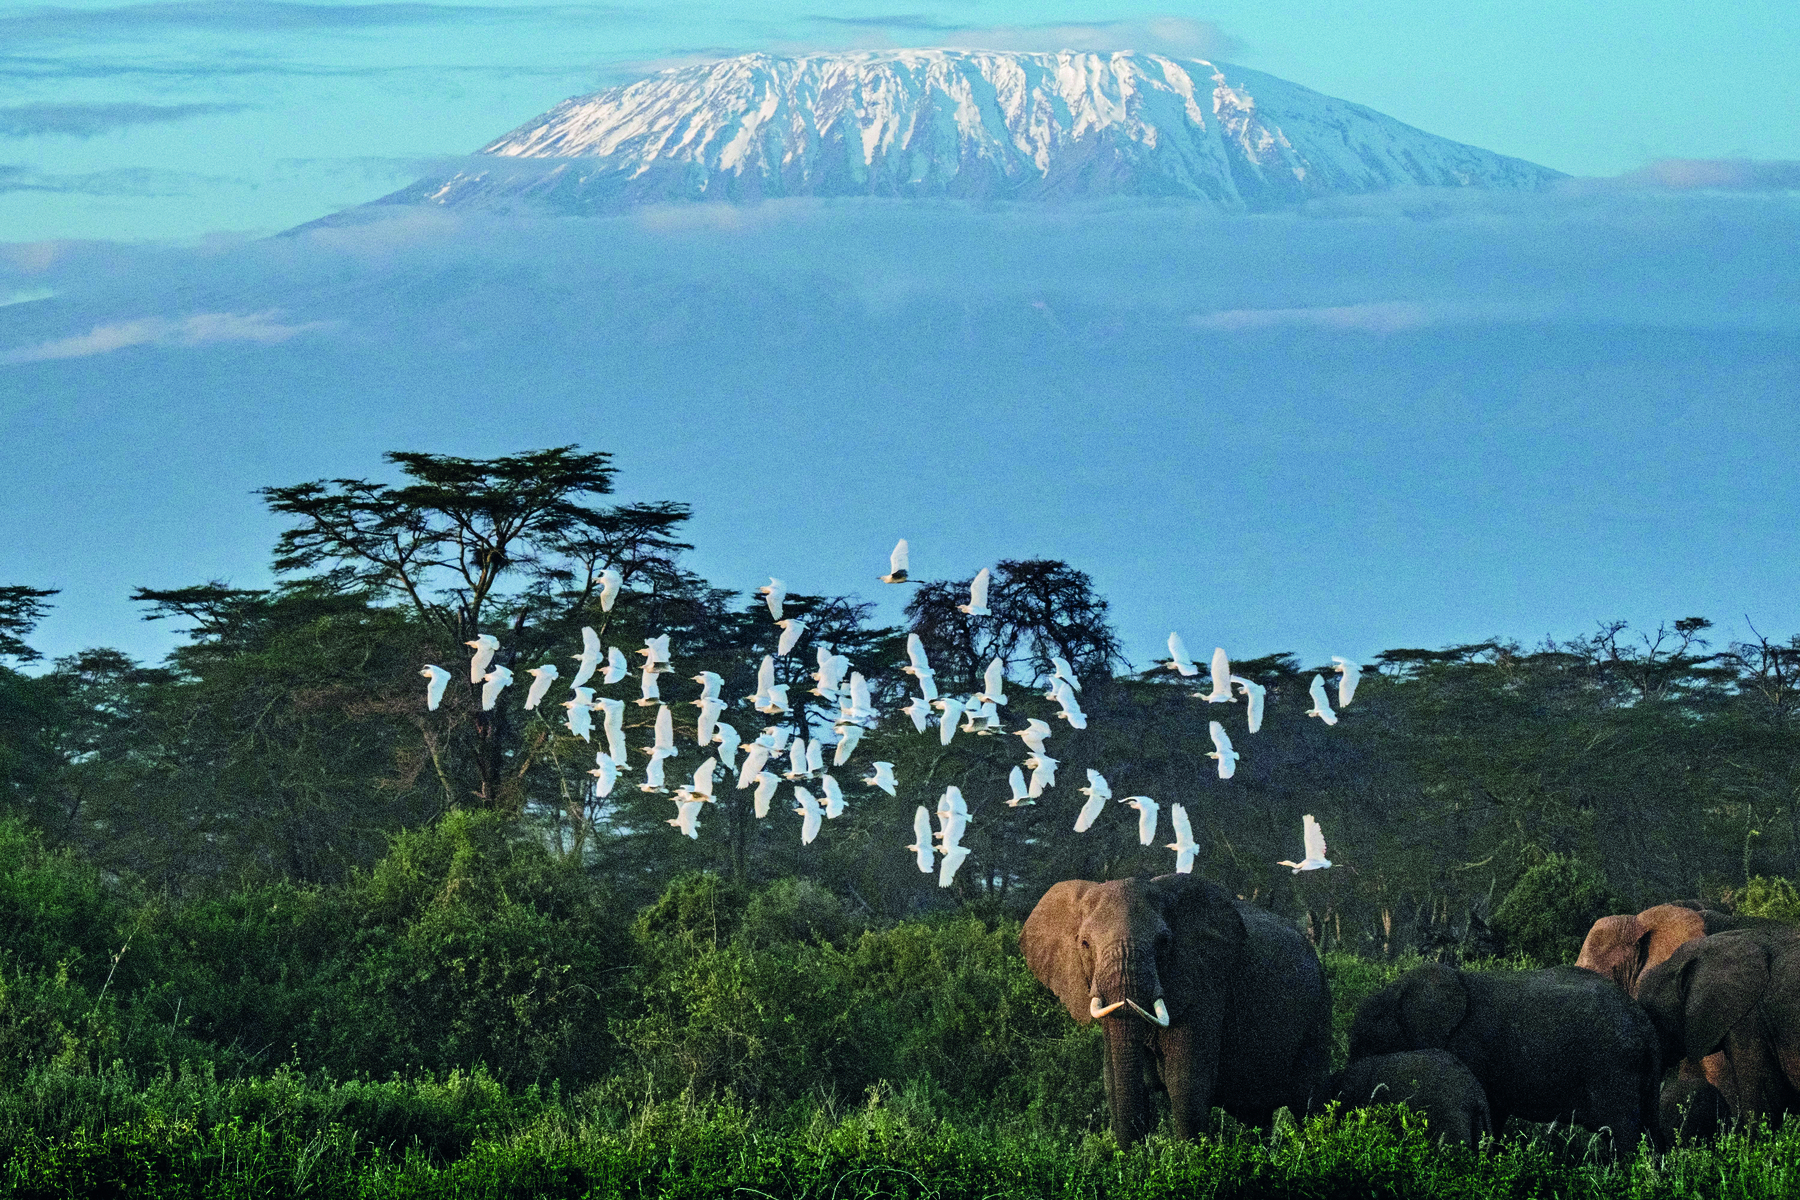 Fotografia. Vista de uma paisagem natural, destacando elefantes sobre uma área de densa vegetação, e pássaros de penas brancas sobrevoando. Ao fundo, um monte elevado com o ápice em tons esbranquiçados.